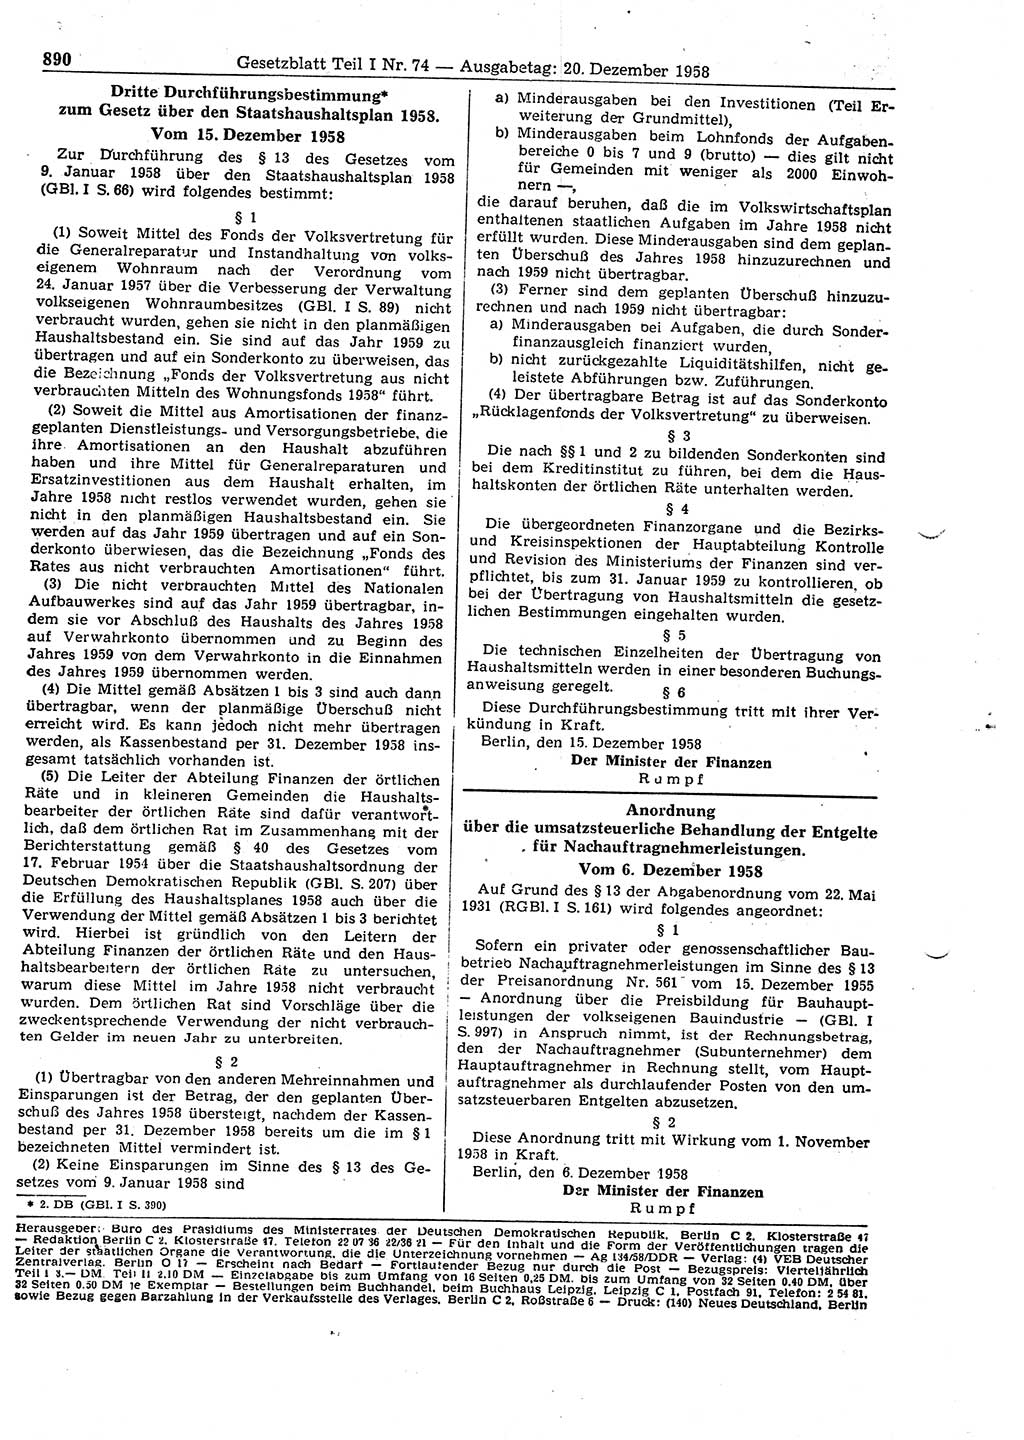 Gesetzblatt (GBl.) der Deutschen Demokratischen Republik (DDR) Teil Ⅰ 1958, Seite 890 (GBl. DDR Ⅰ 1958, S. 890)